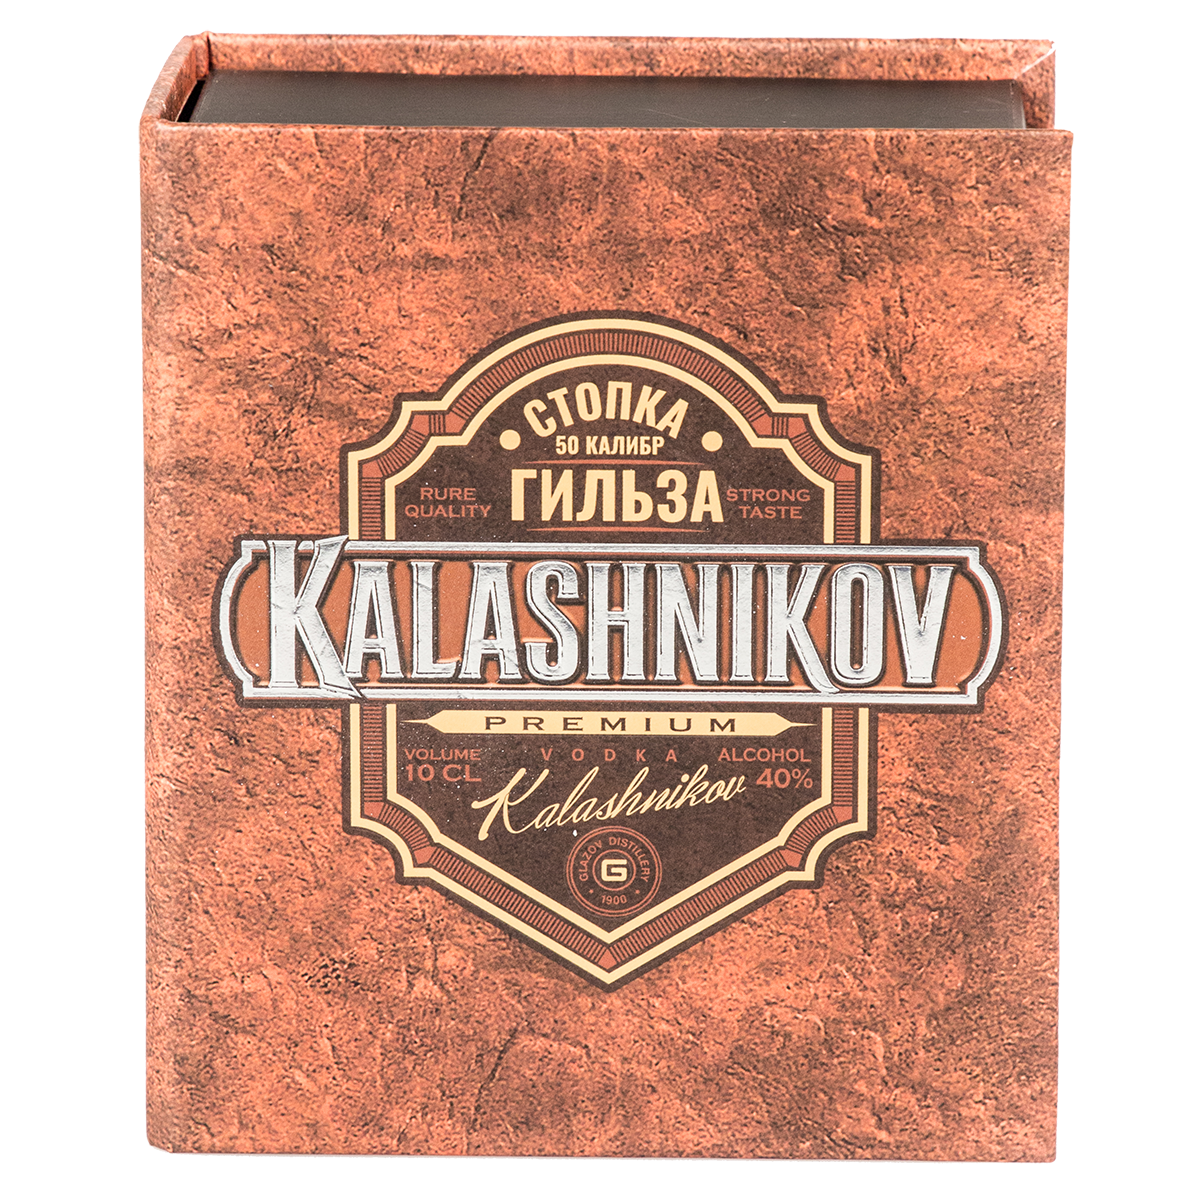 Коробка-книжка с флокированным ложементом "Kalashnikov", 125*150*60 мм